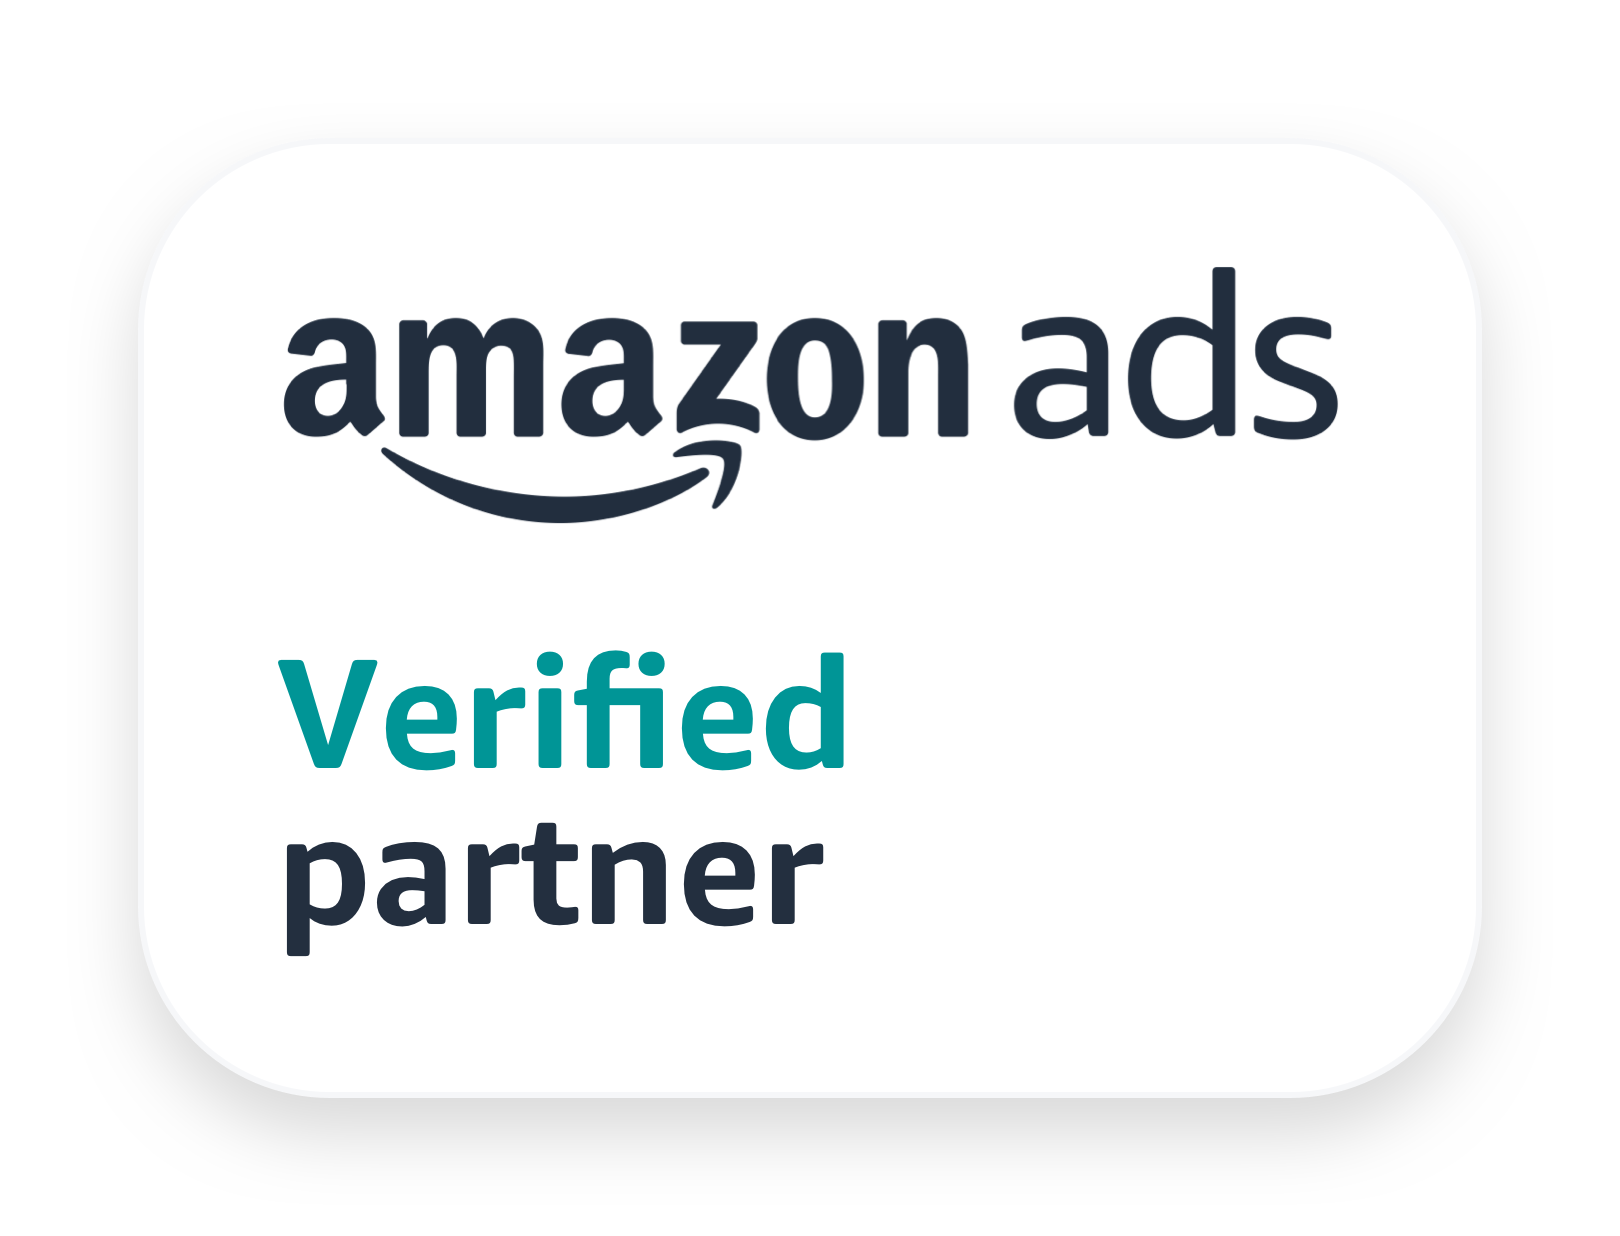 Amazon ads Verified Partner logo